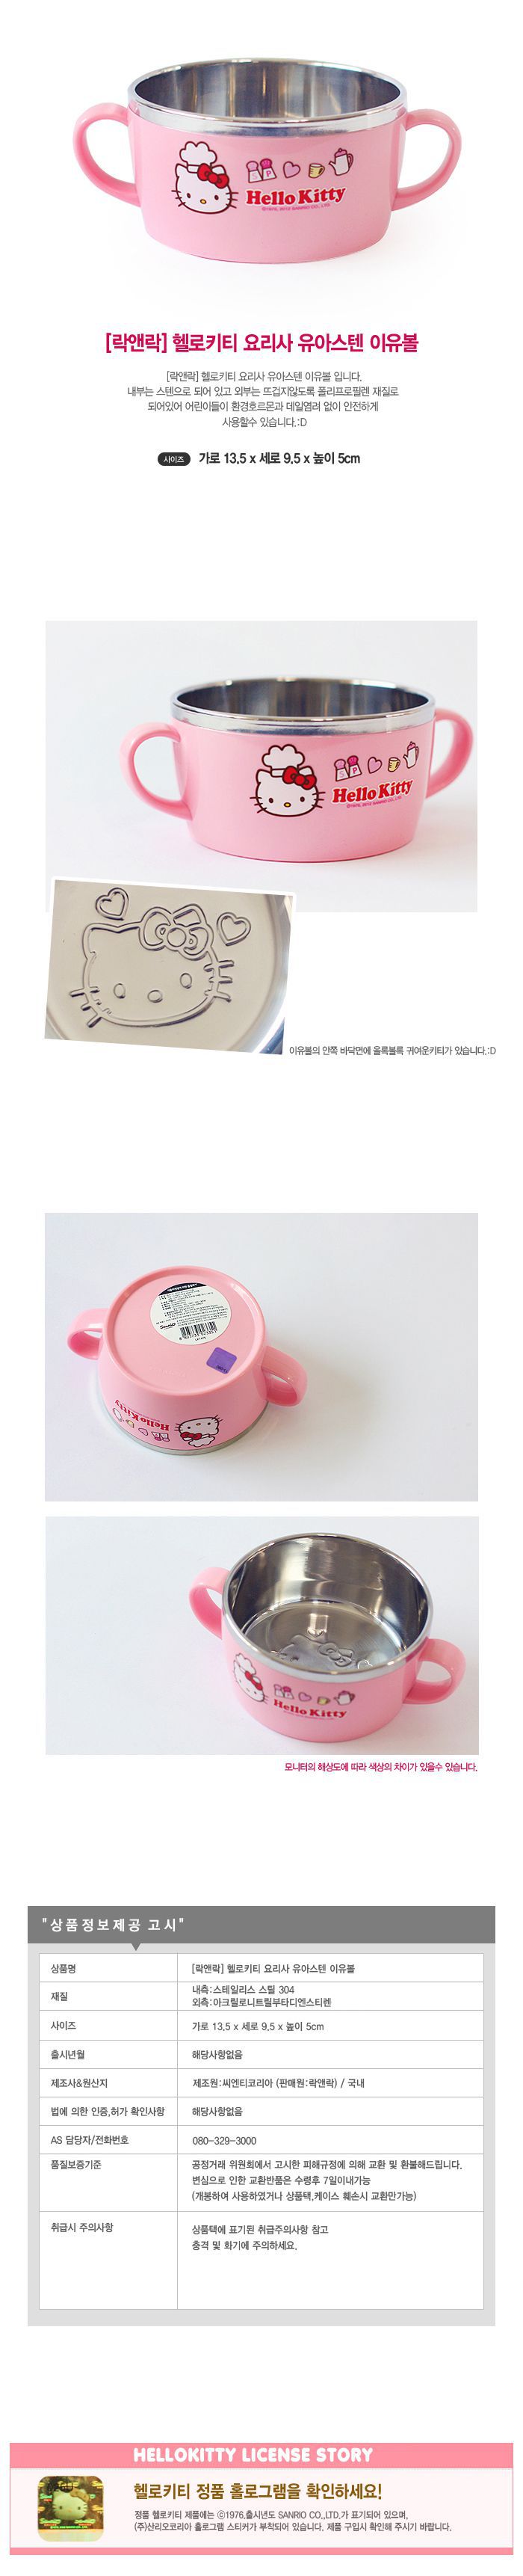 韓國製樂扣HELLO KITTY不鏽鋼雙耳把手小餐碗 / 湯碗